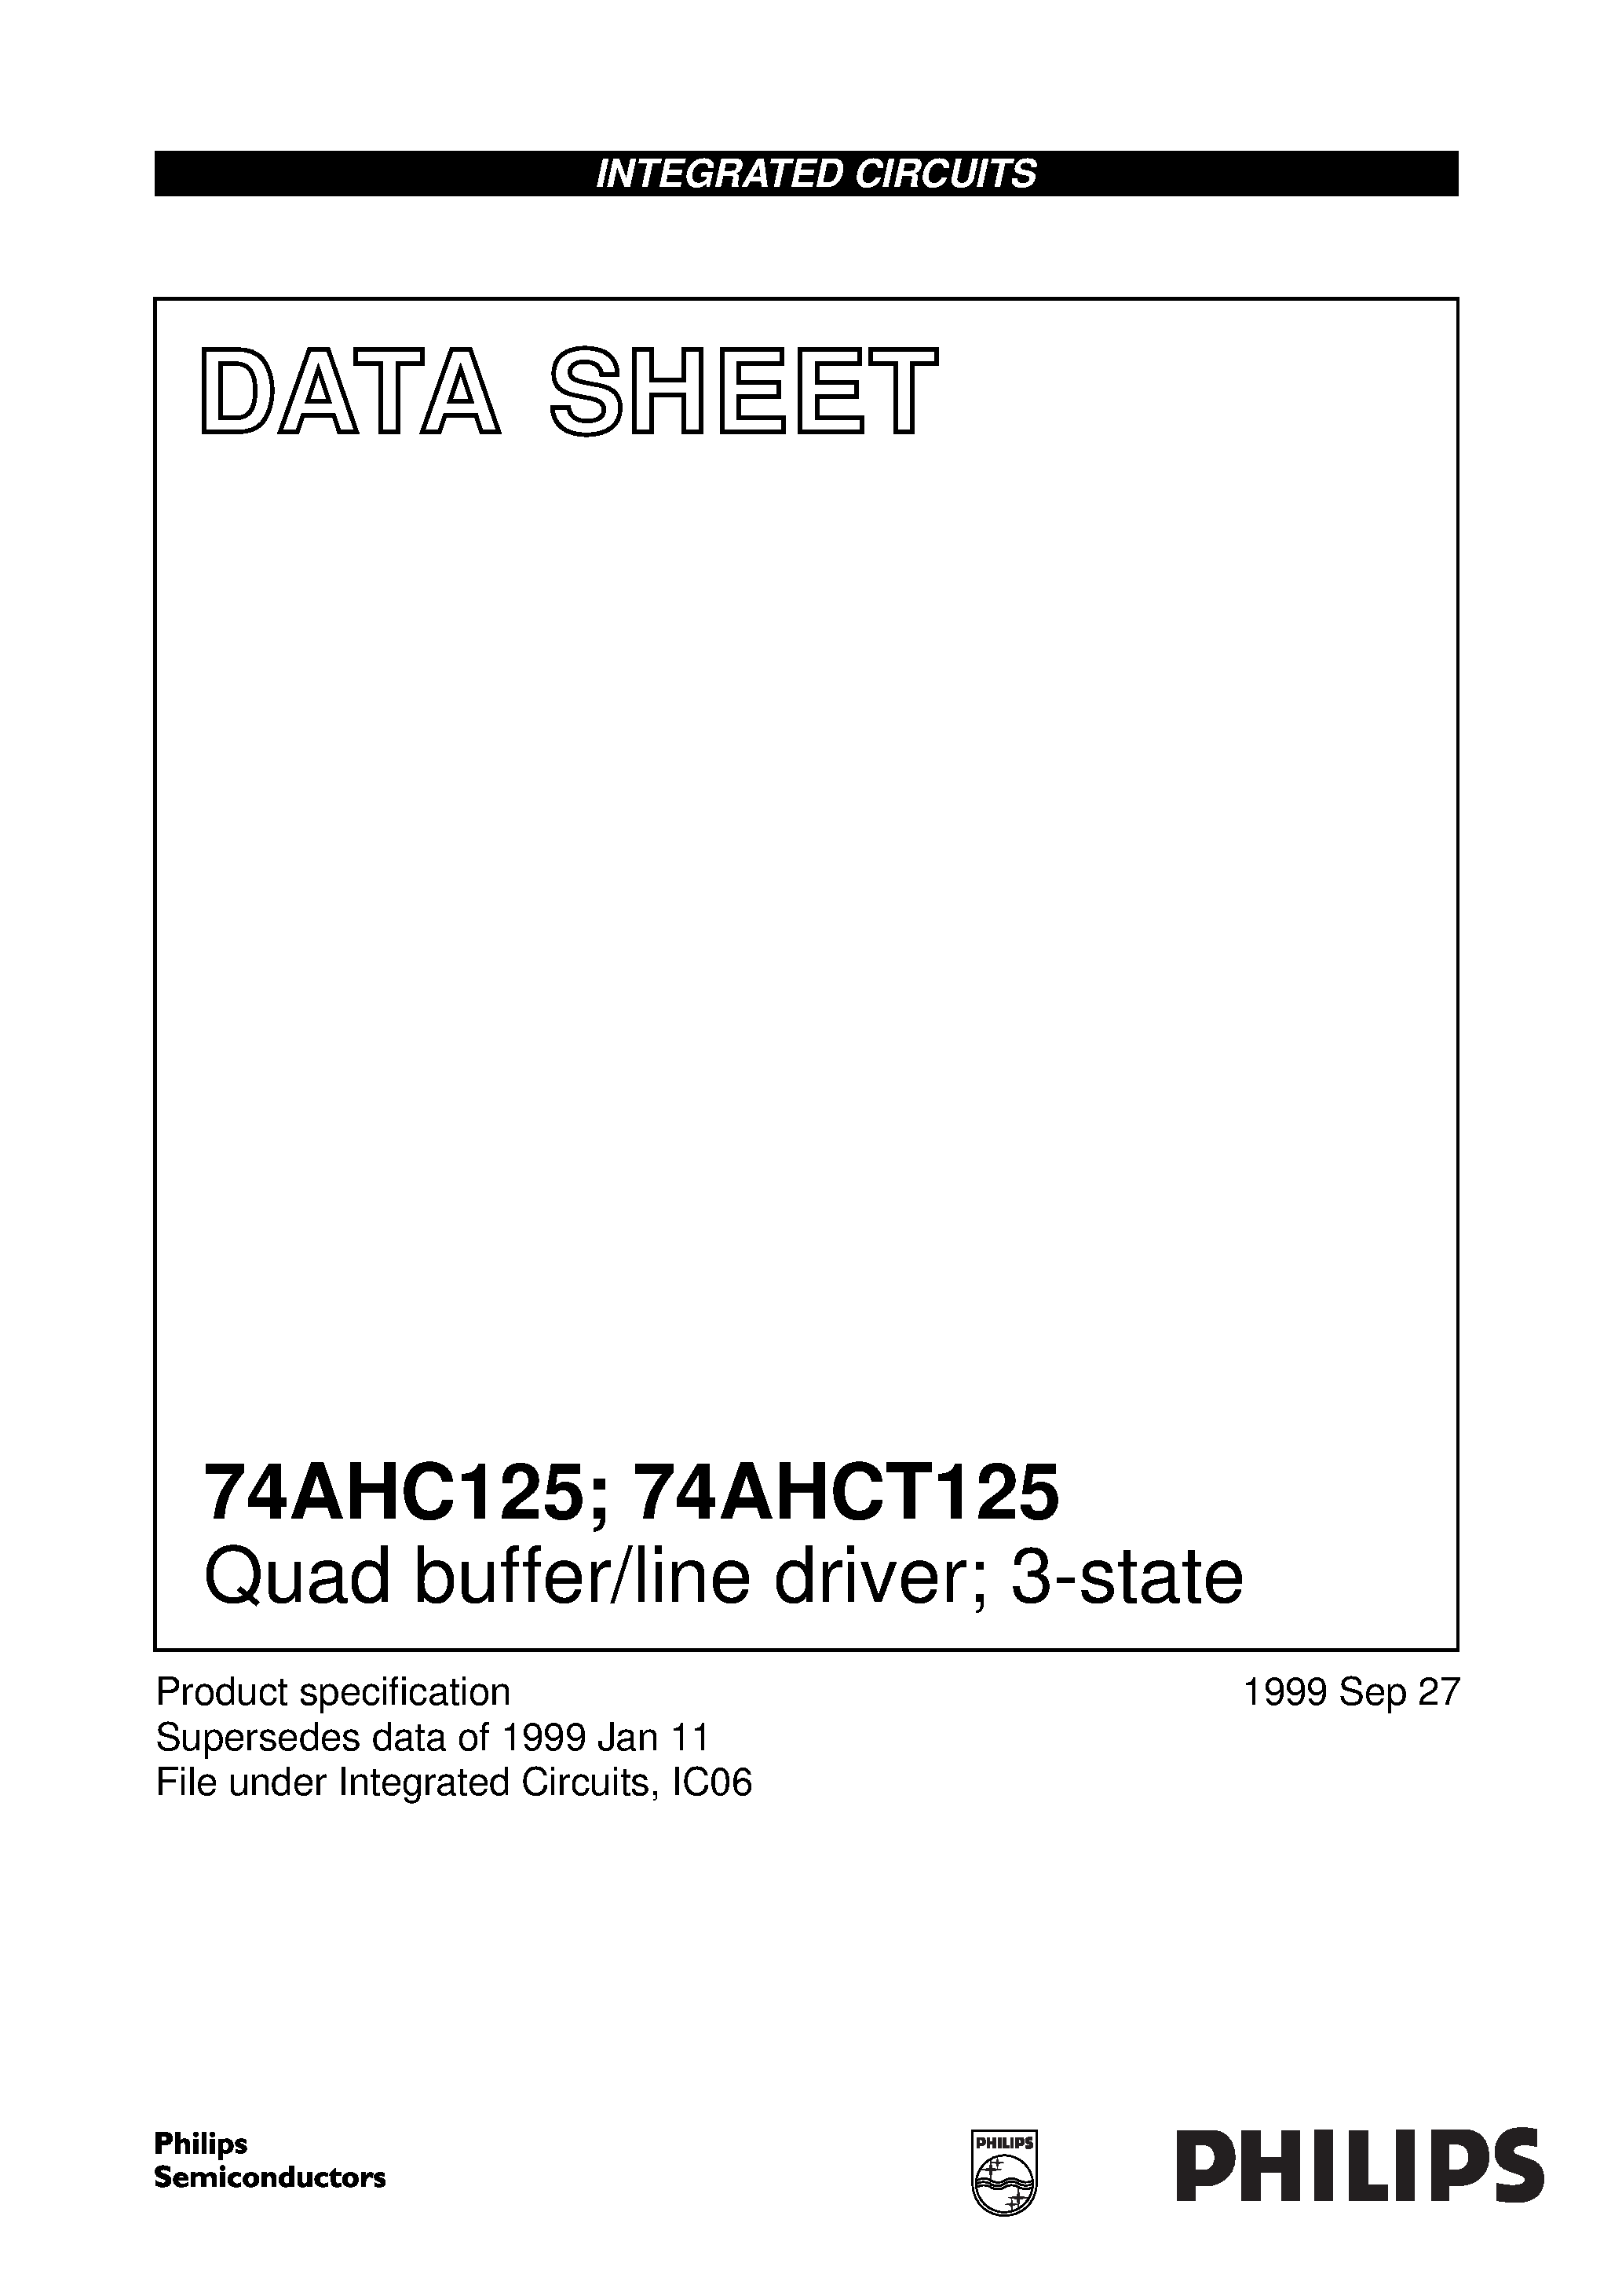 Даташит 74AHC125 - Quad buffer/line driver; 3-state страница 1